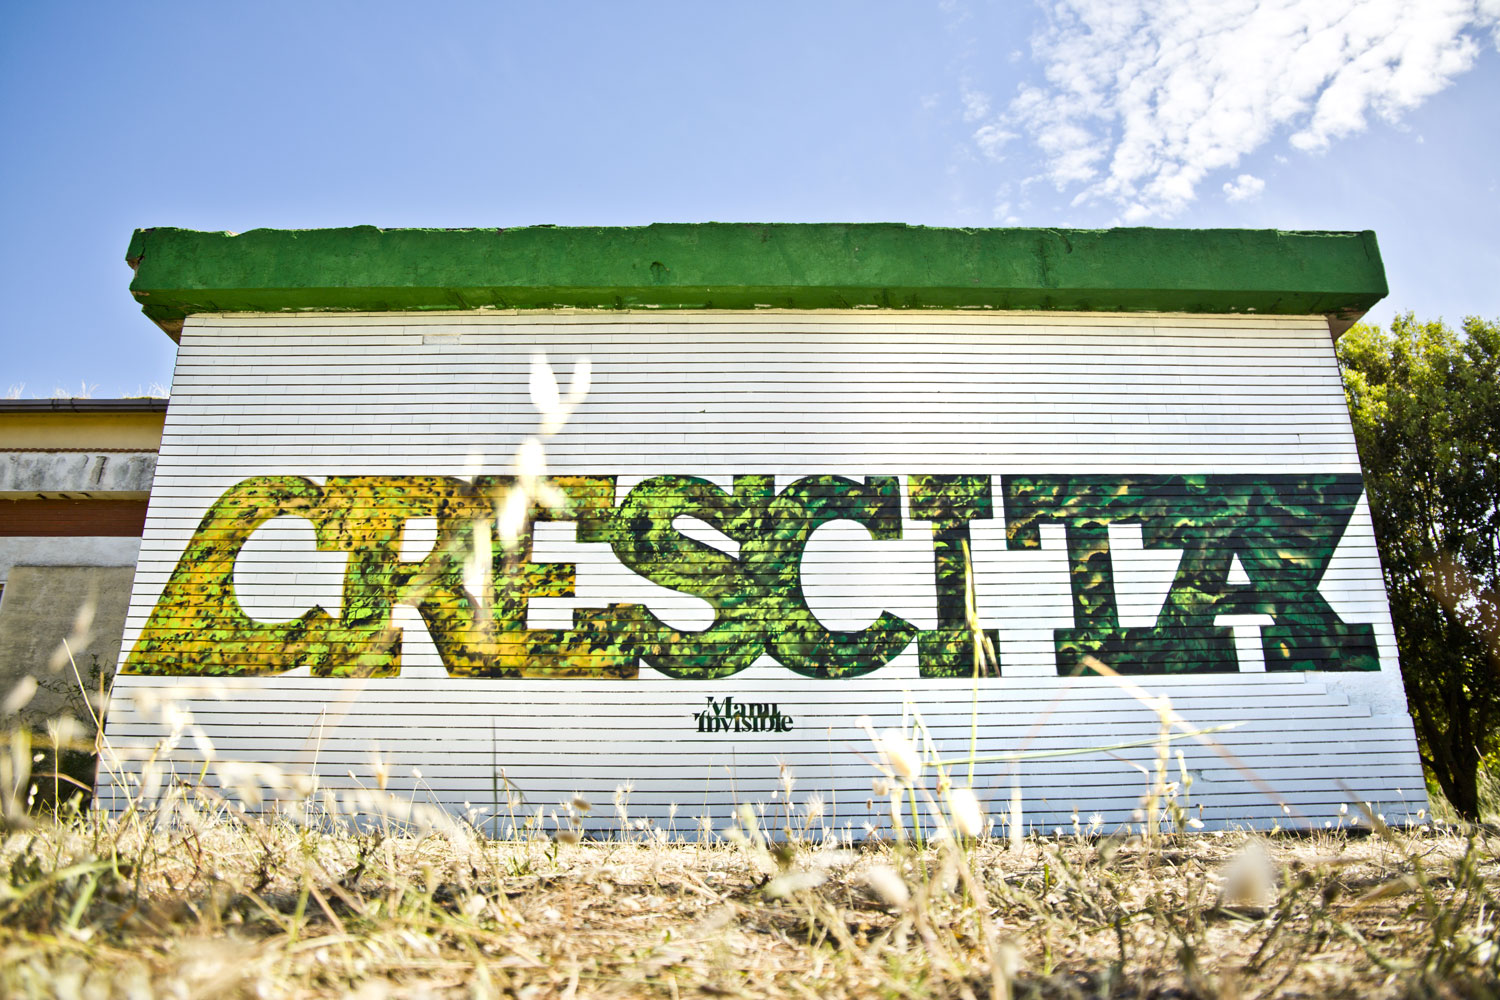 ''Crescita'' Spray et peinture au quartz sur le mur de brique 6 x 4 m Villacidro 2017